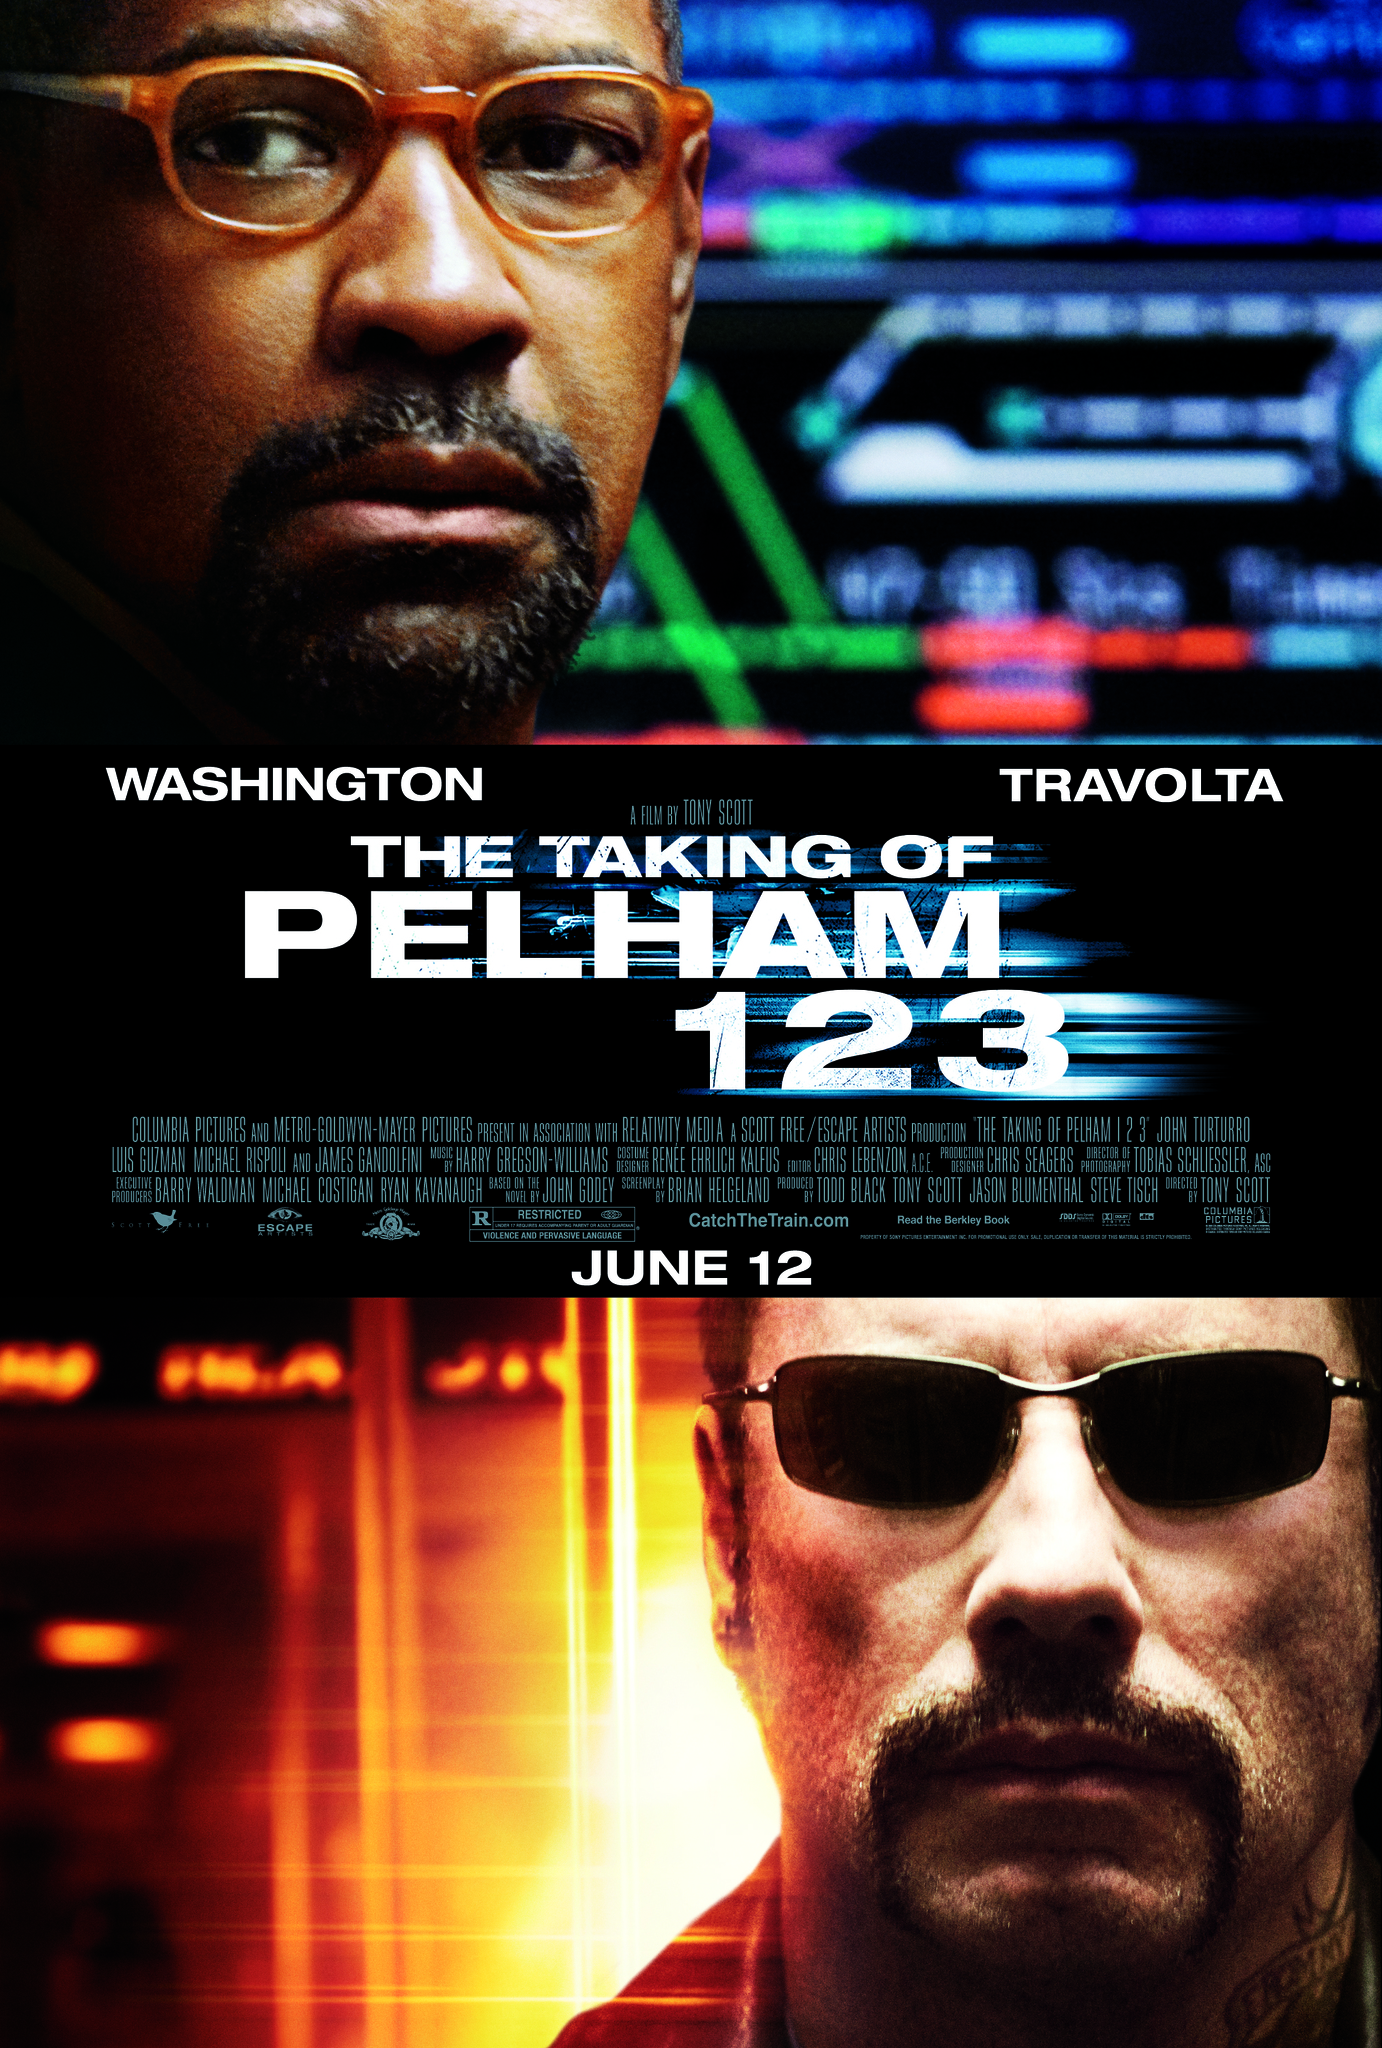 The Taking of Pelham 123 (2009) ปล้นนรก รถด่วนขบวน 123 Denzel Washington